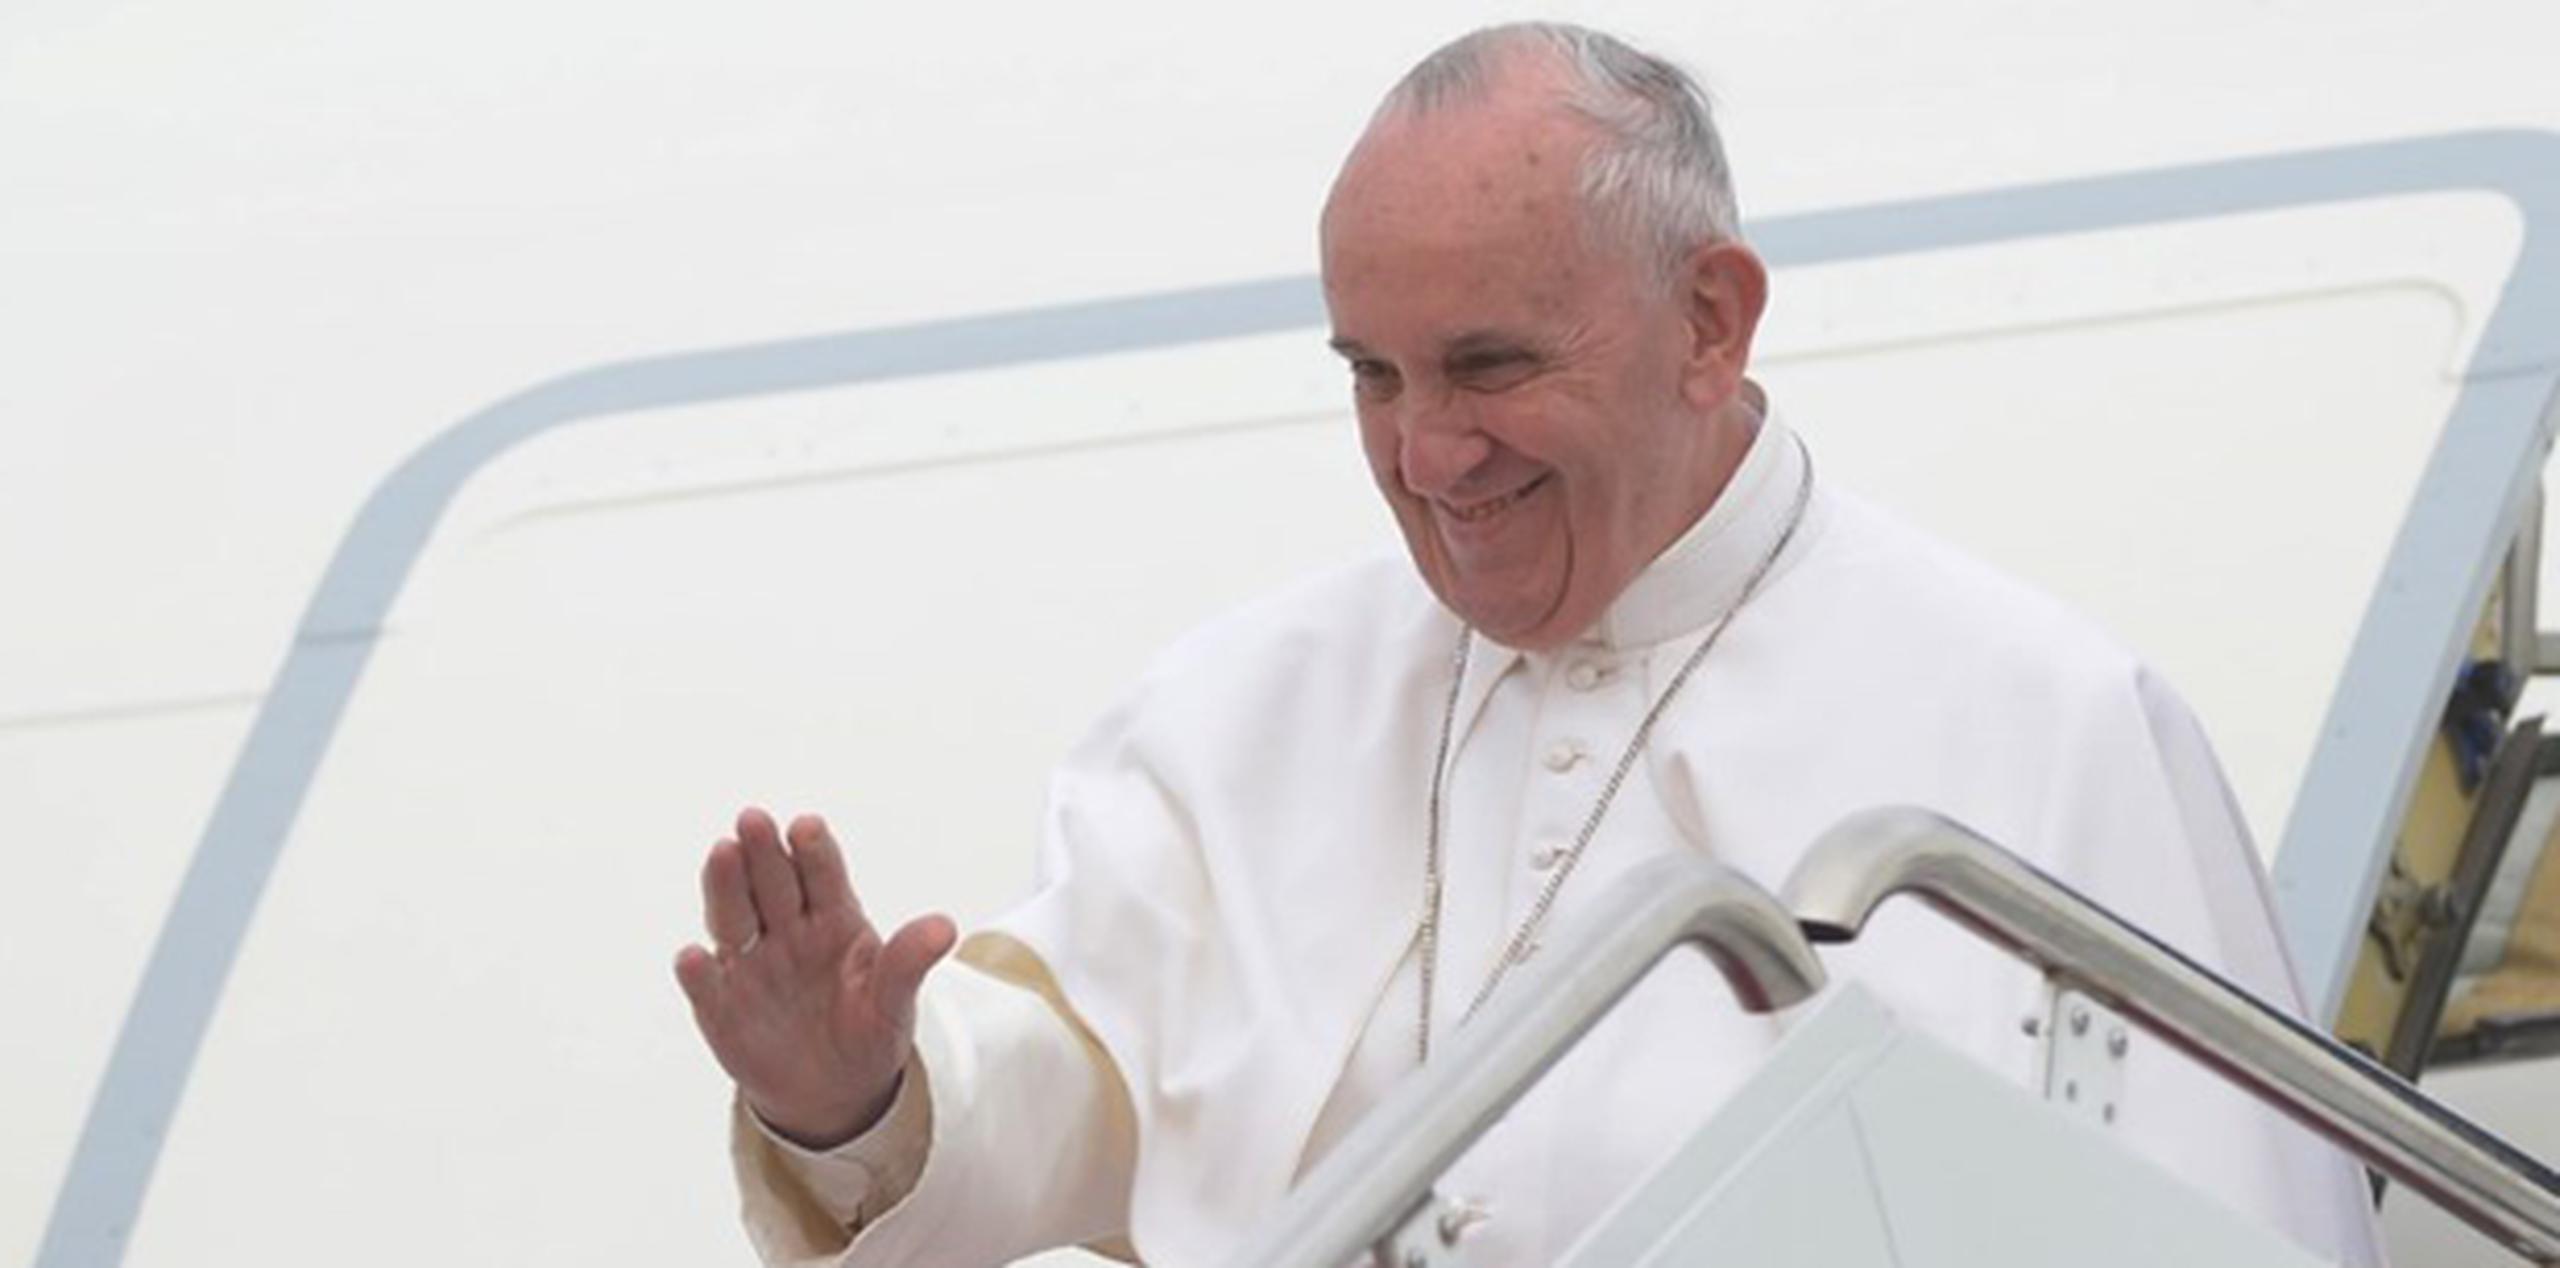 La visita del pontífice ha atrapado la atención de Washington desde el momento en que el sonriente Francisco salió de su avión vestido de blanco. (AFP)